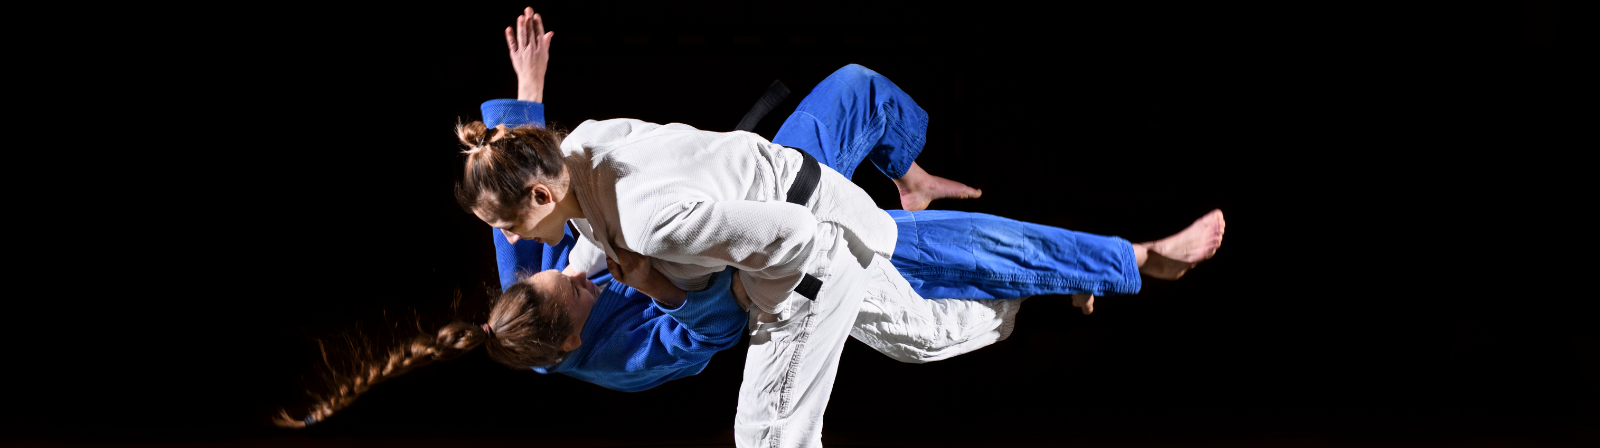 Başarılı Judo Hamlelerinin Analizi